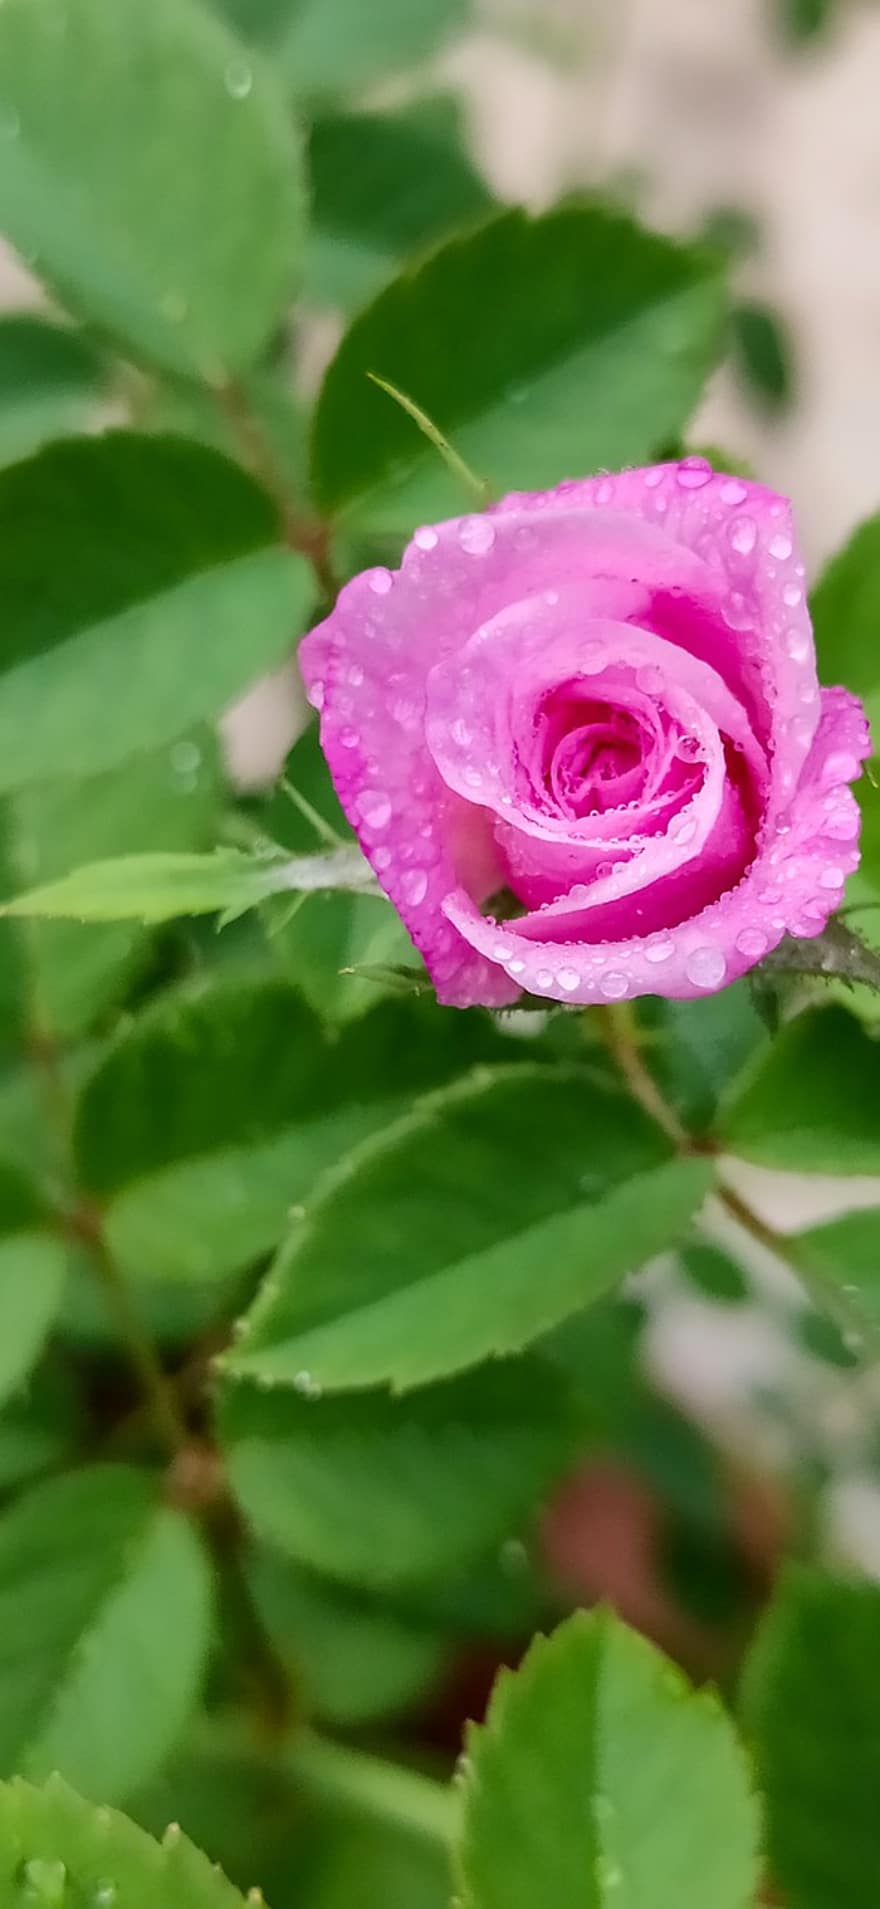 aranyos kis rózsa, csak emelkedett, igazi rózsaszín, rózsaszín rózsa, rózsa, természet, rózsaszín, virág, növény, dekoratív, kert